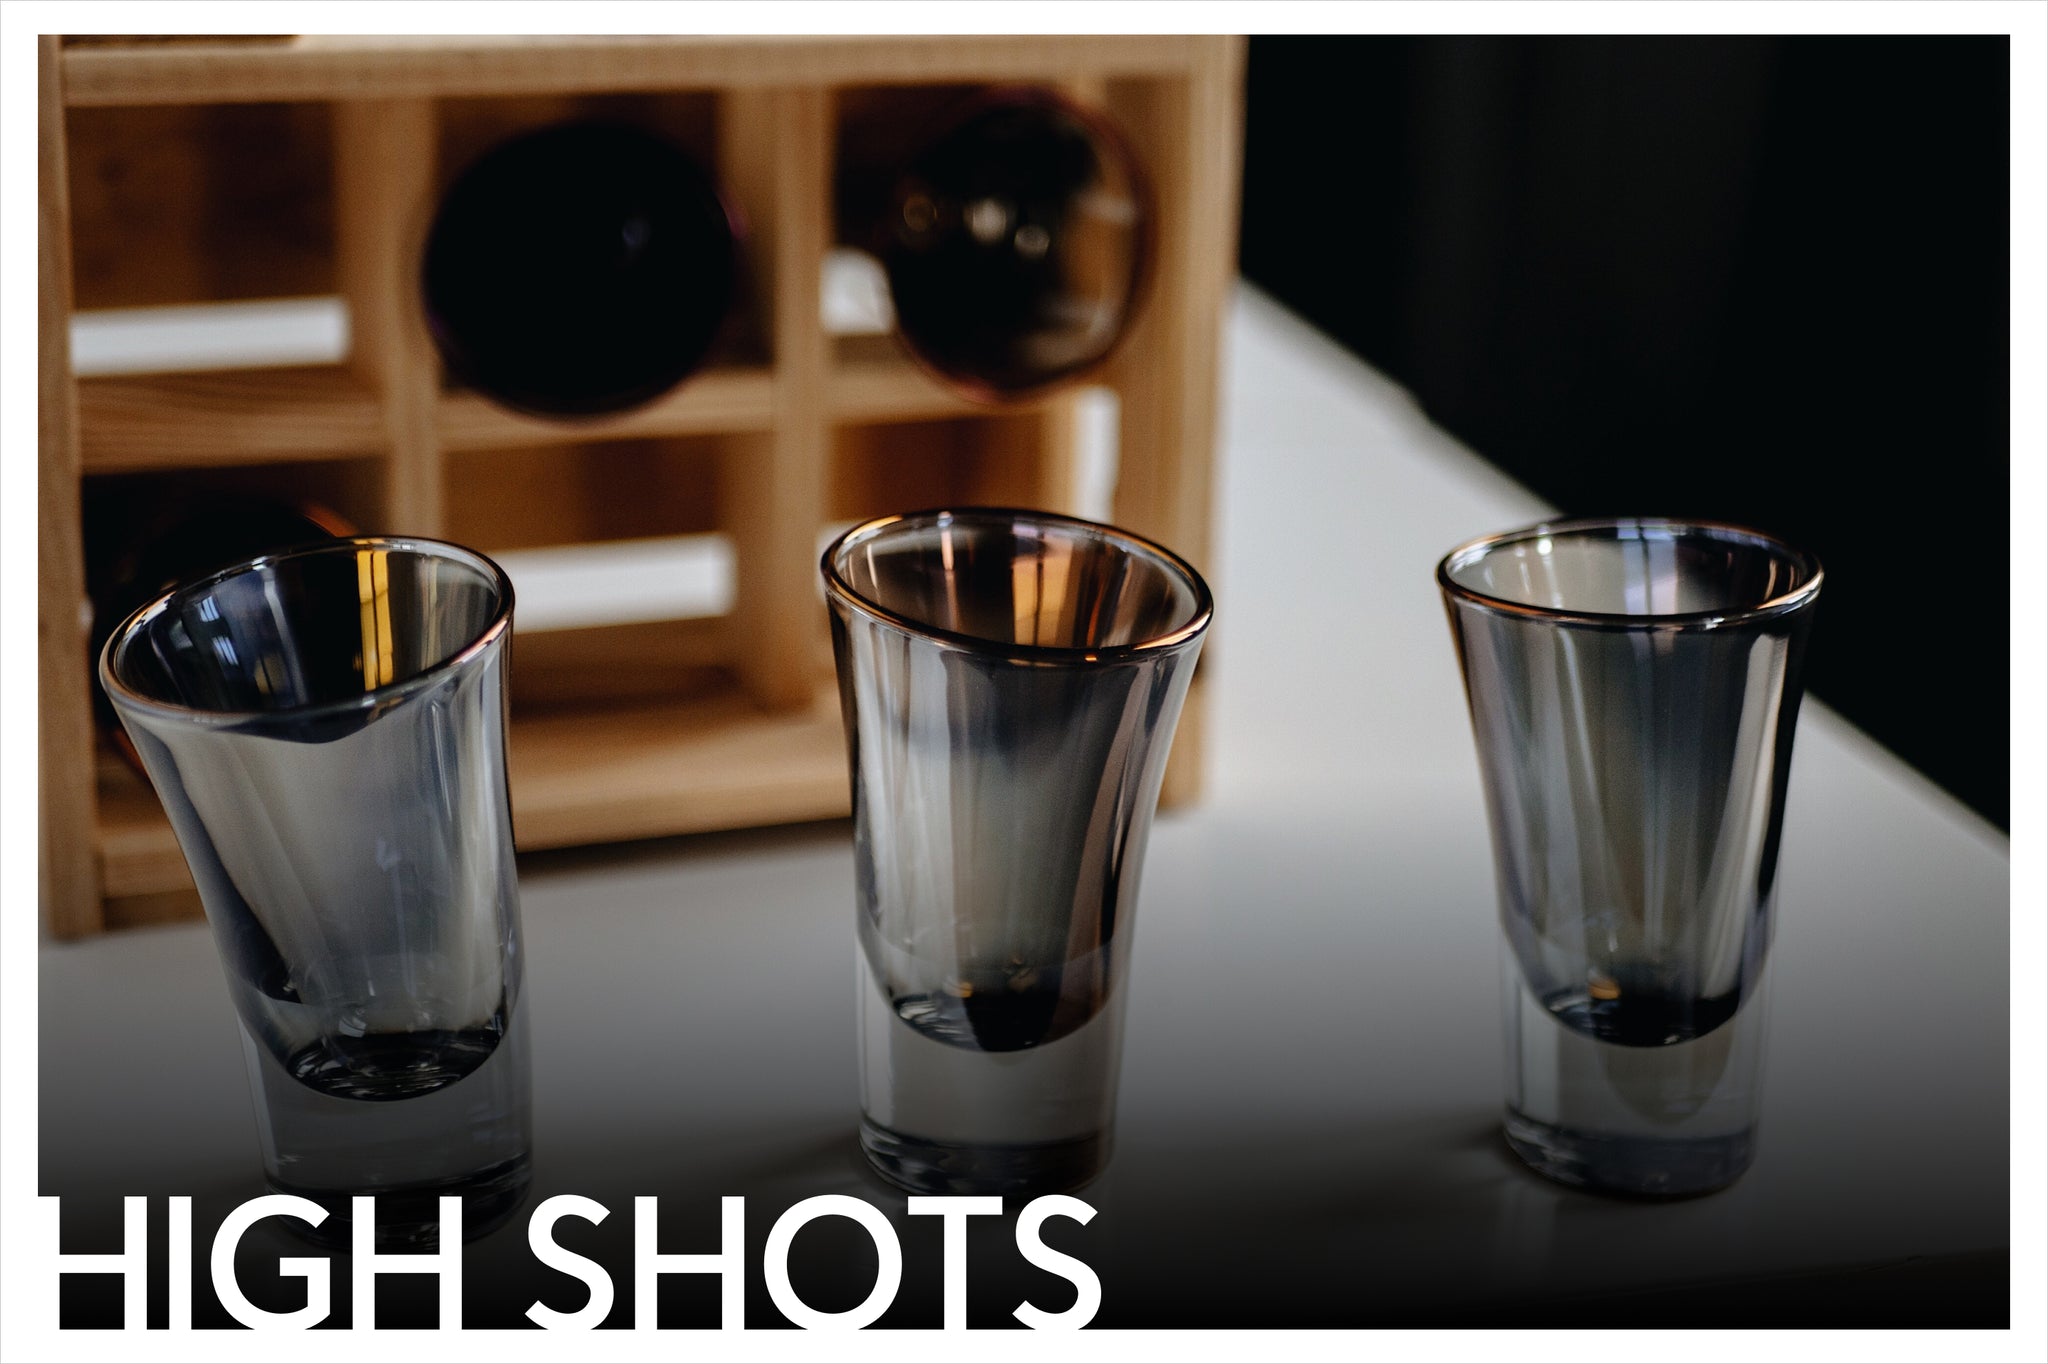 Set of 6 Tequila shots glasses